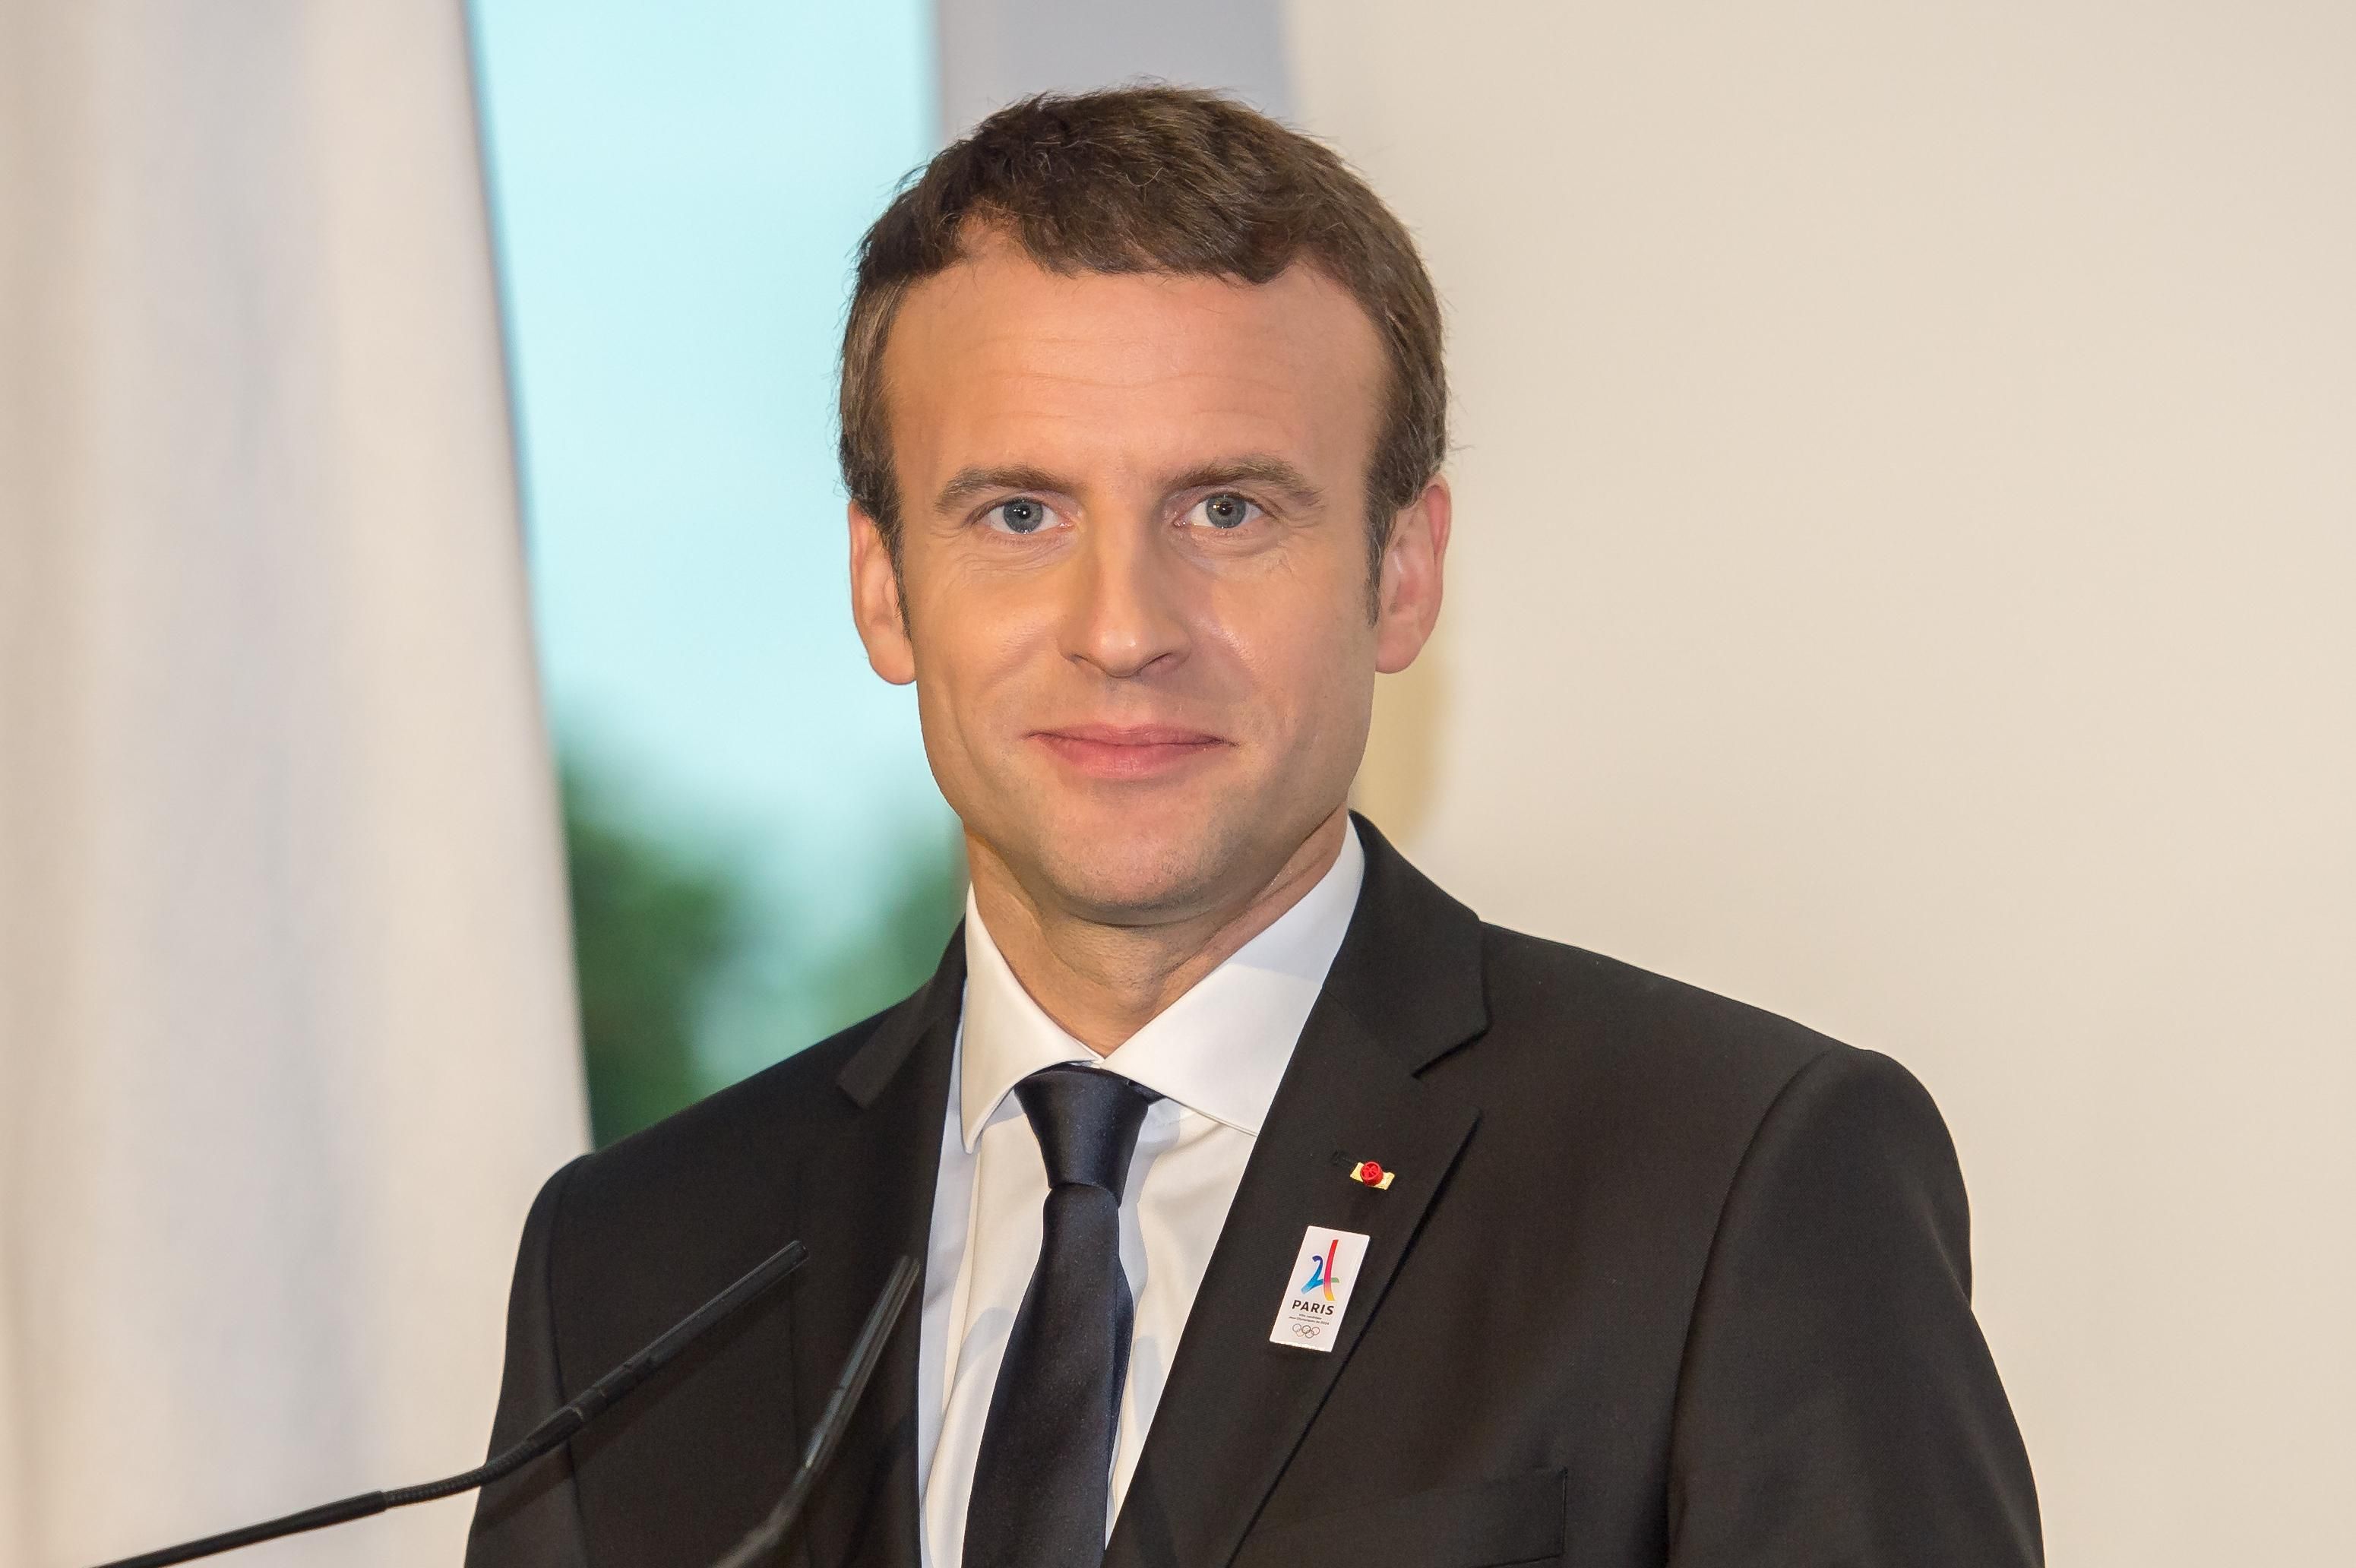 Президент Франции выступил с обращением к военнослужащим страны